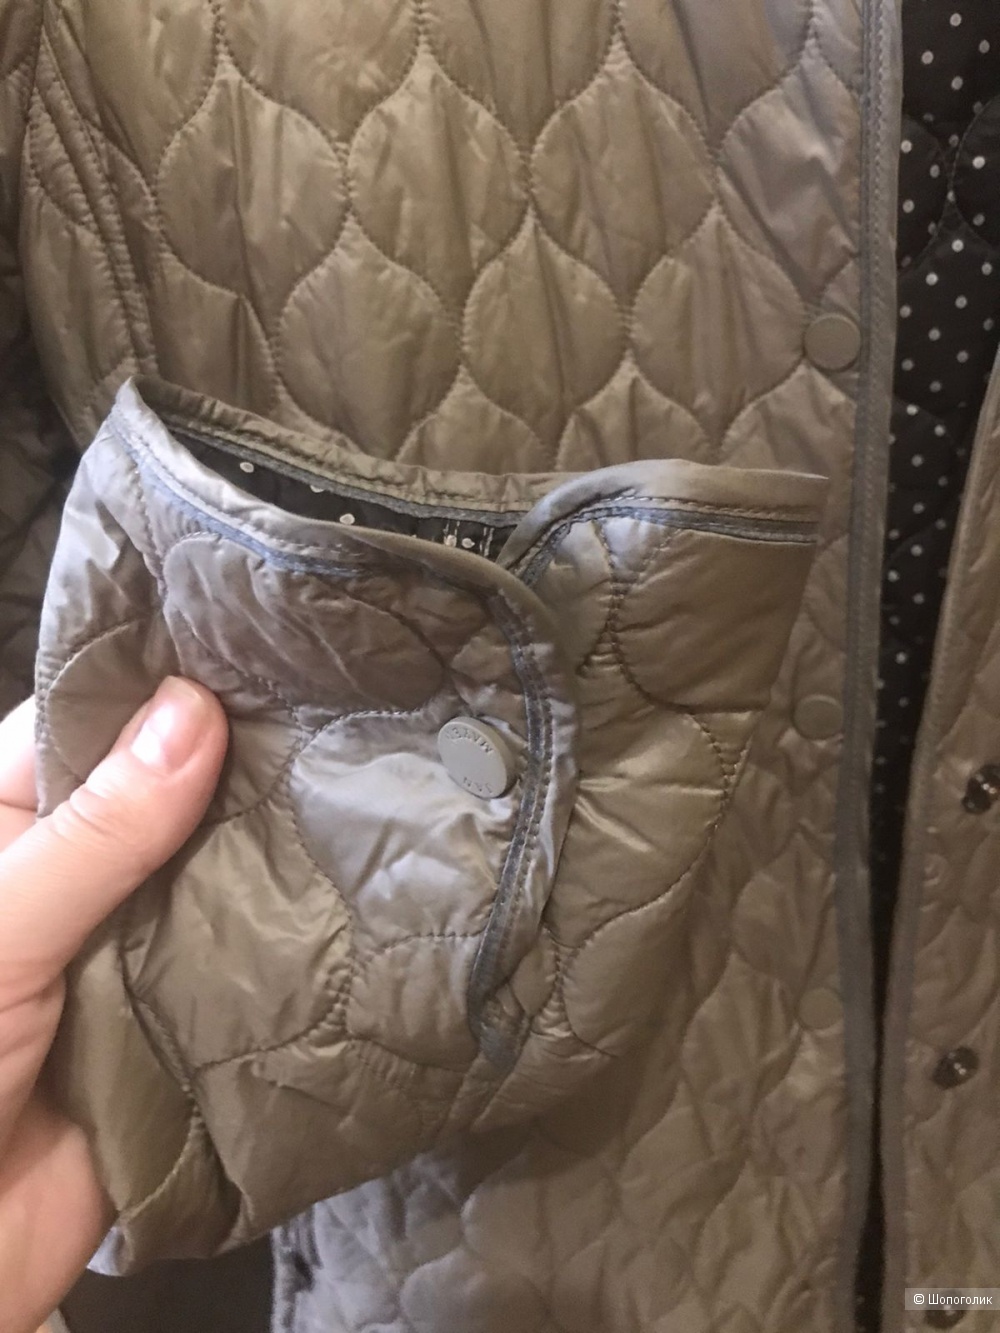 Куртка Jan Mayen размер M/L (итал.46)